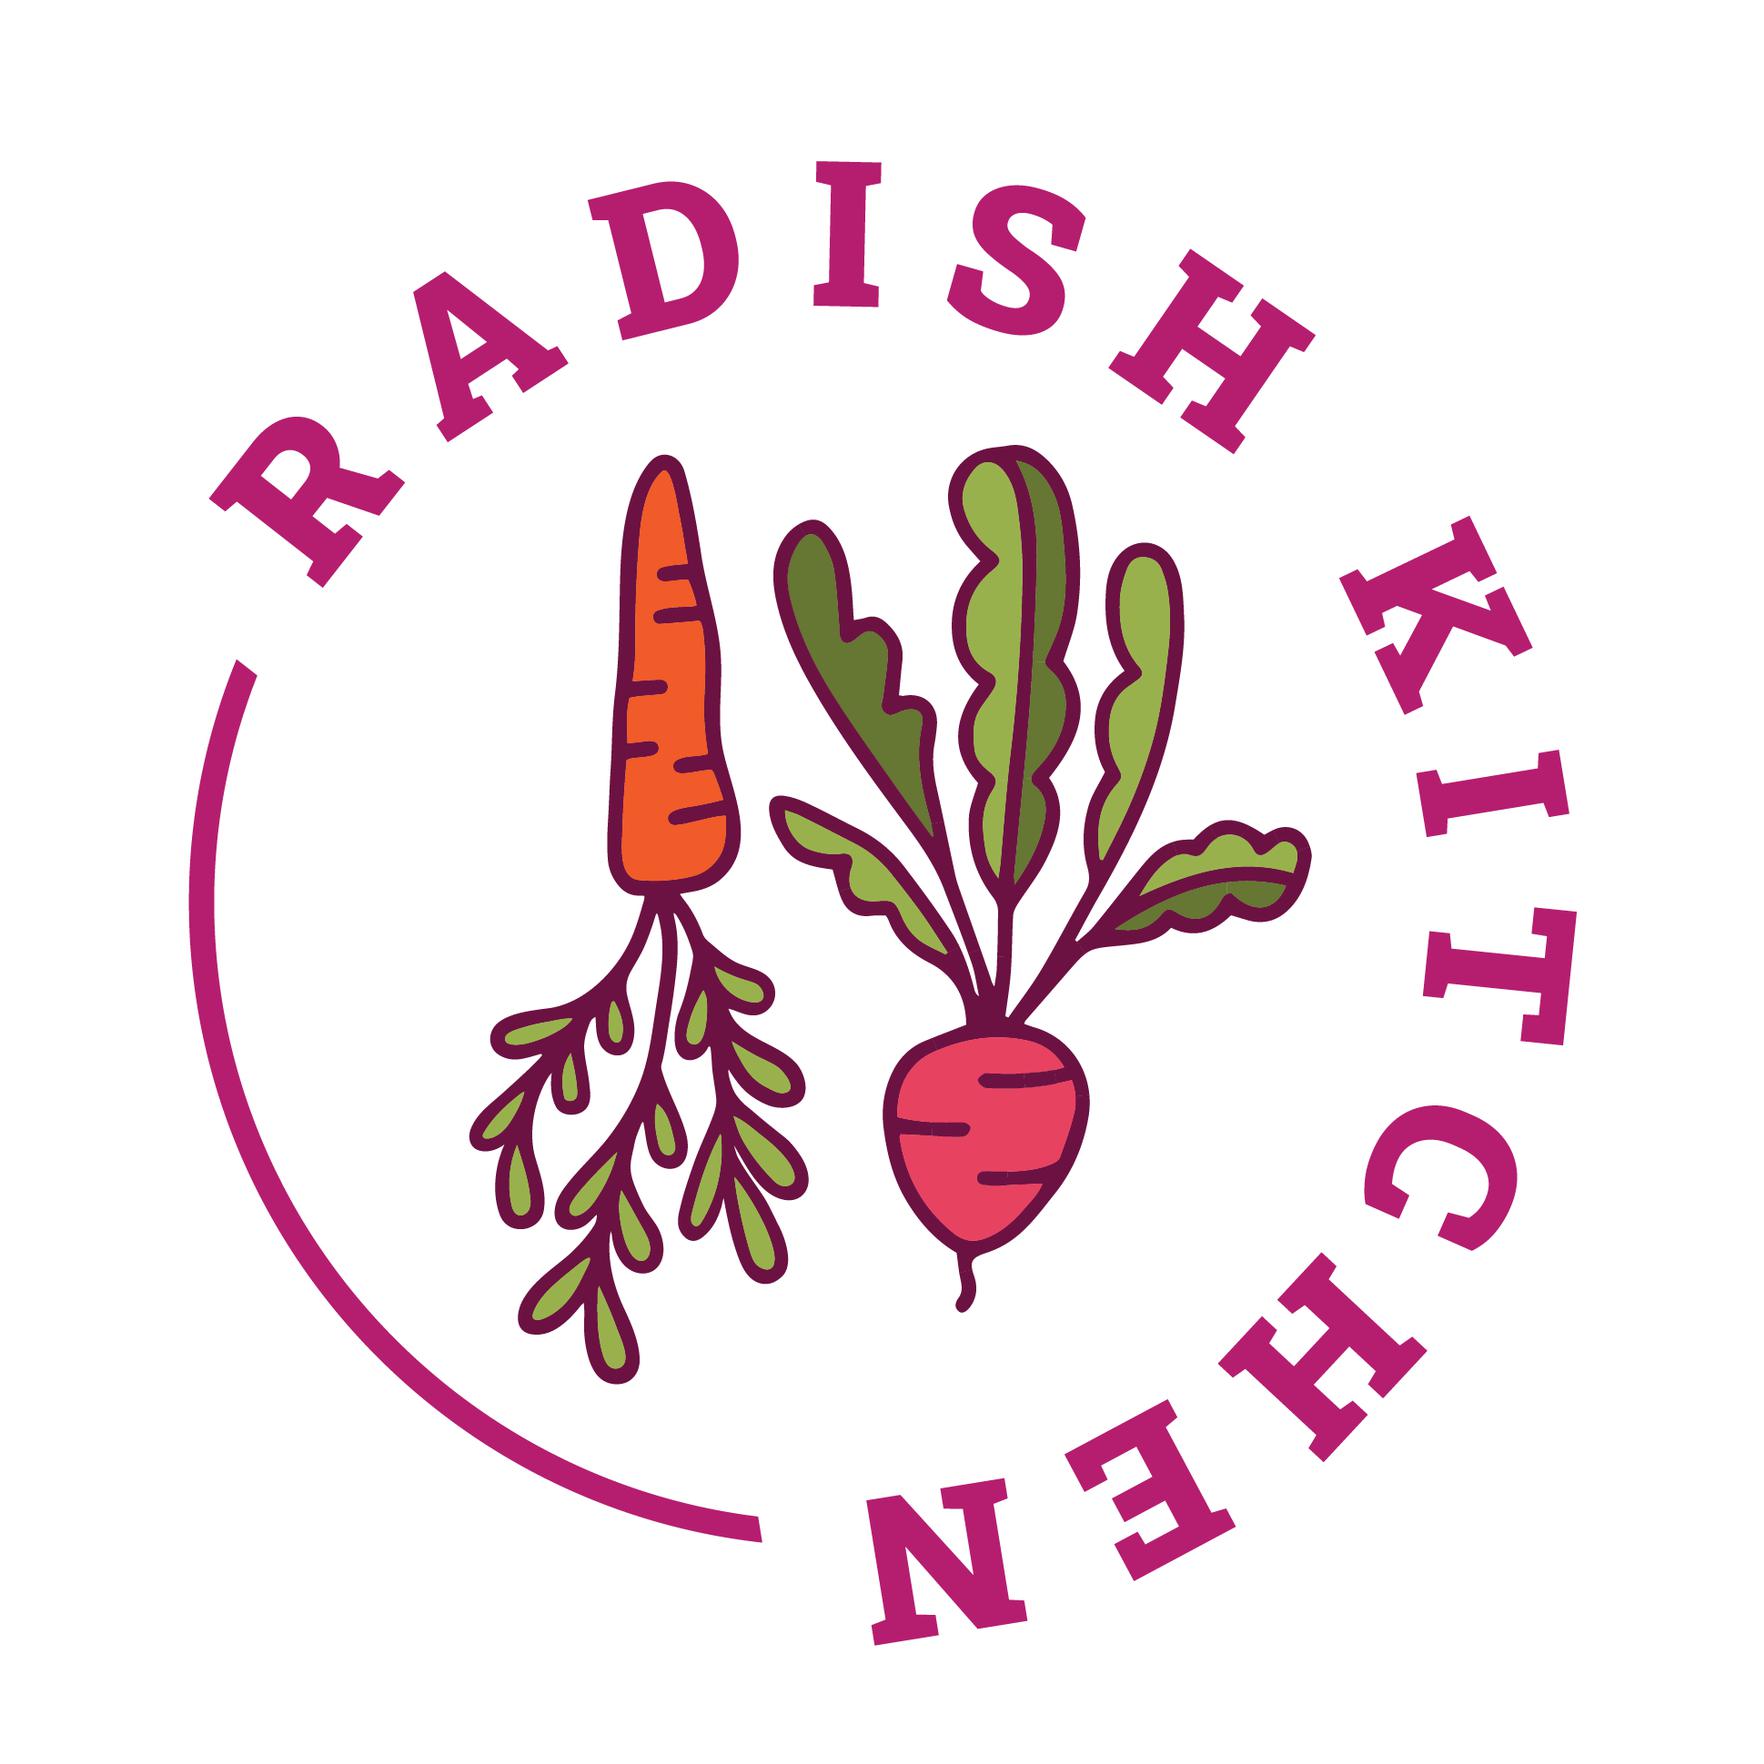 Radish Kitchen Peoria